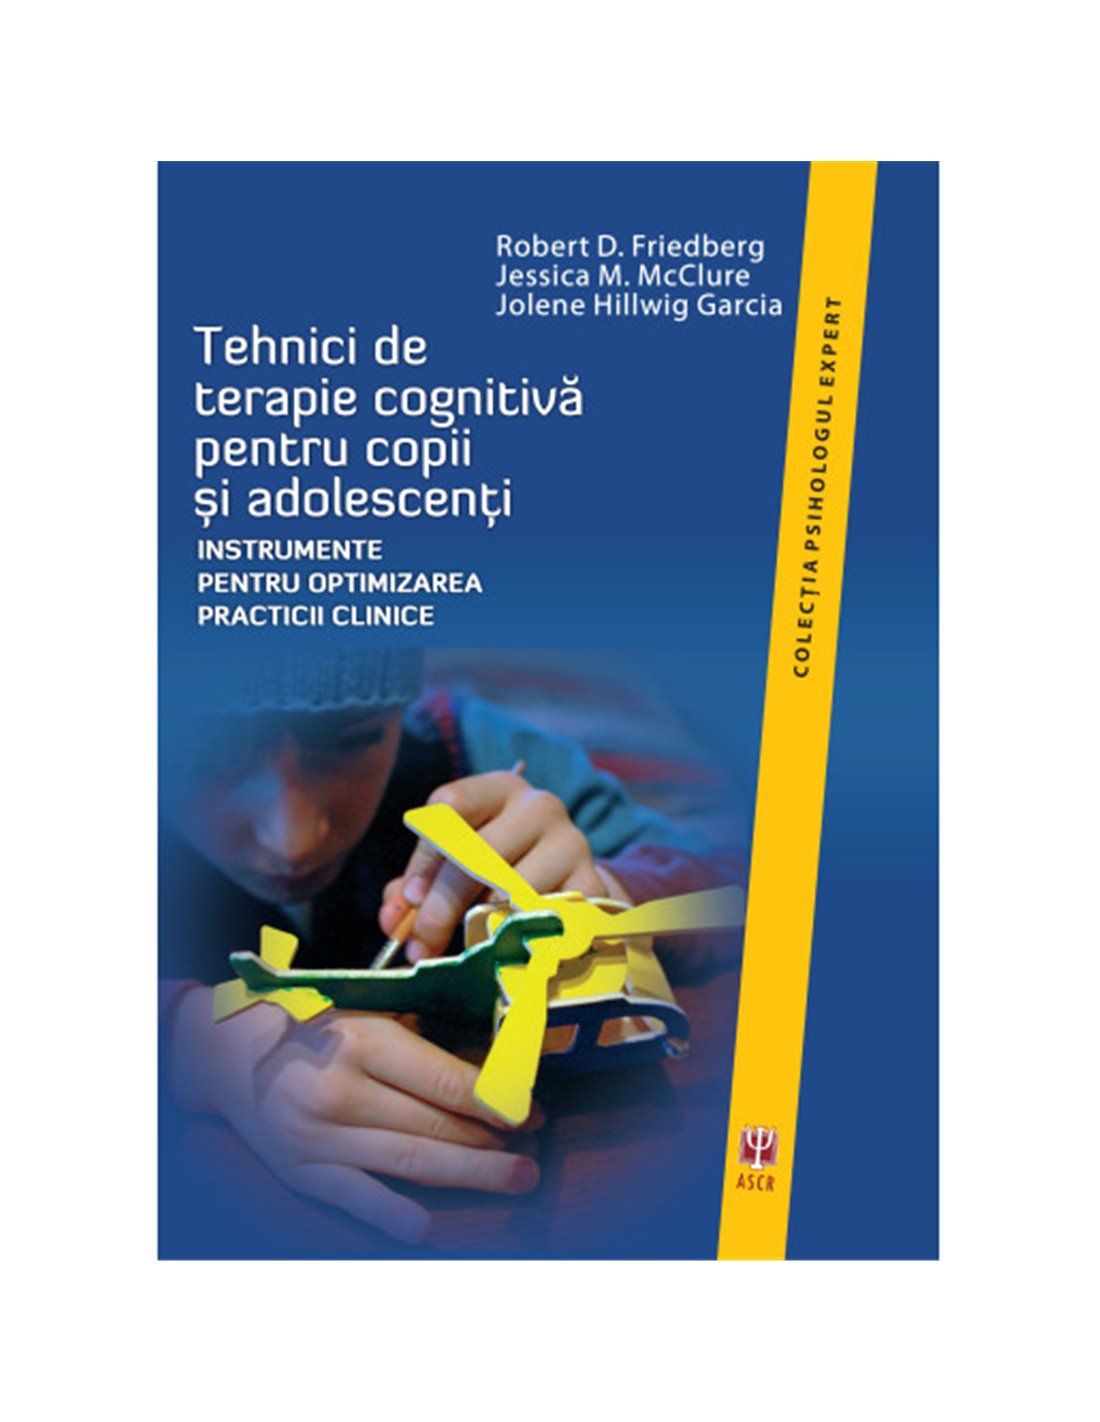 Tehnici de terapie cognitiva pentru copii si adolescenti - Robert D. Friedberg, Jessica M. McClure, Jolene Hillwig Garcia | Edit